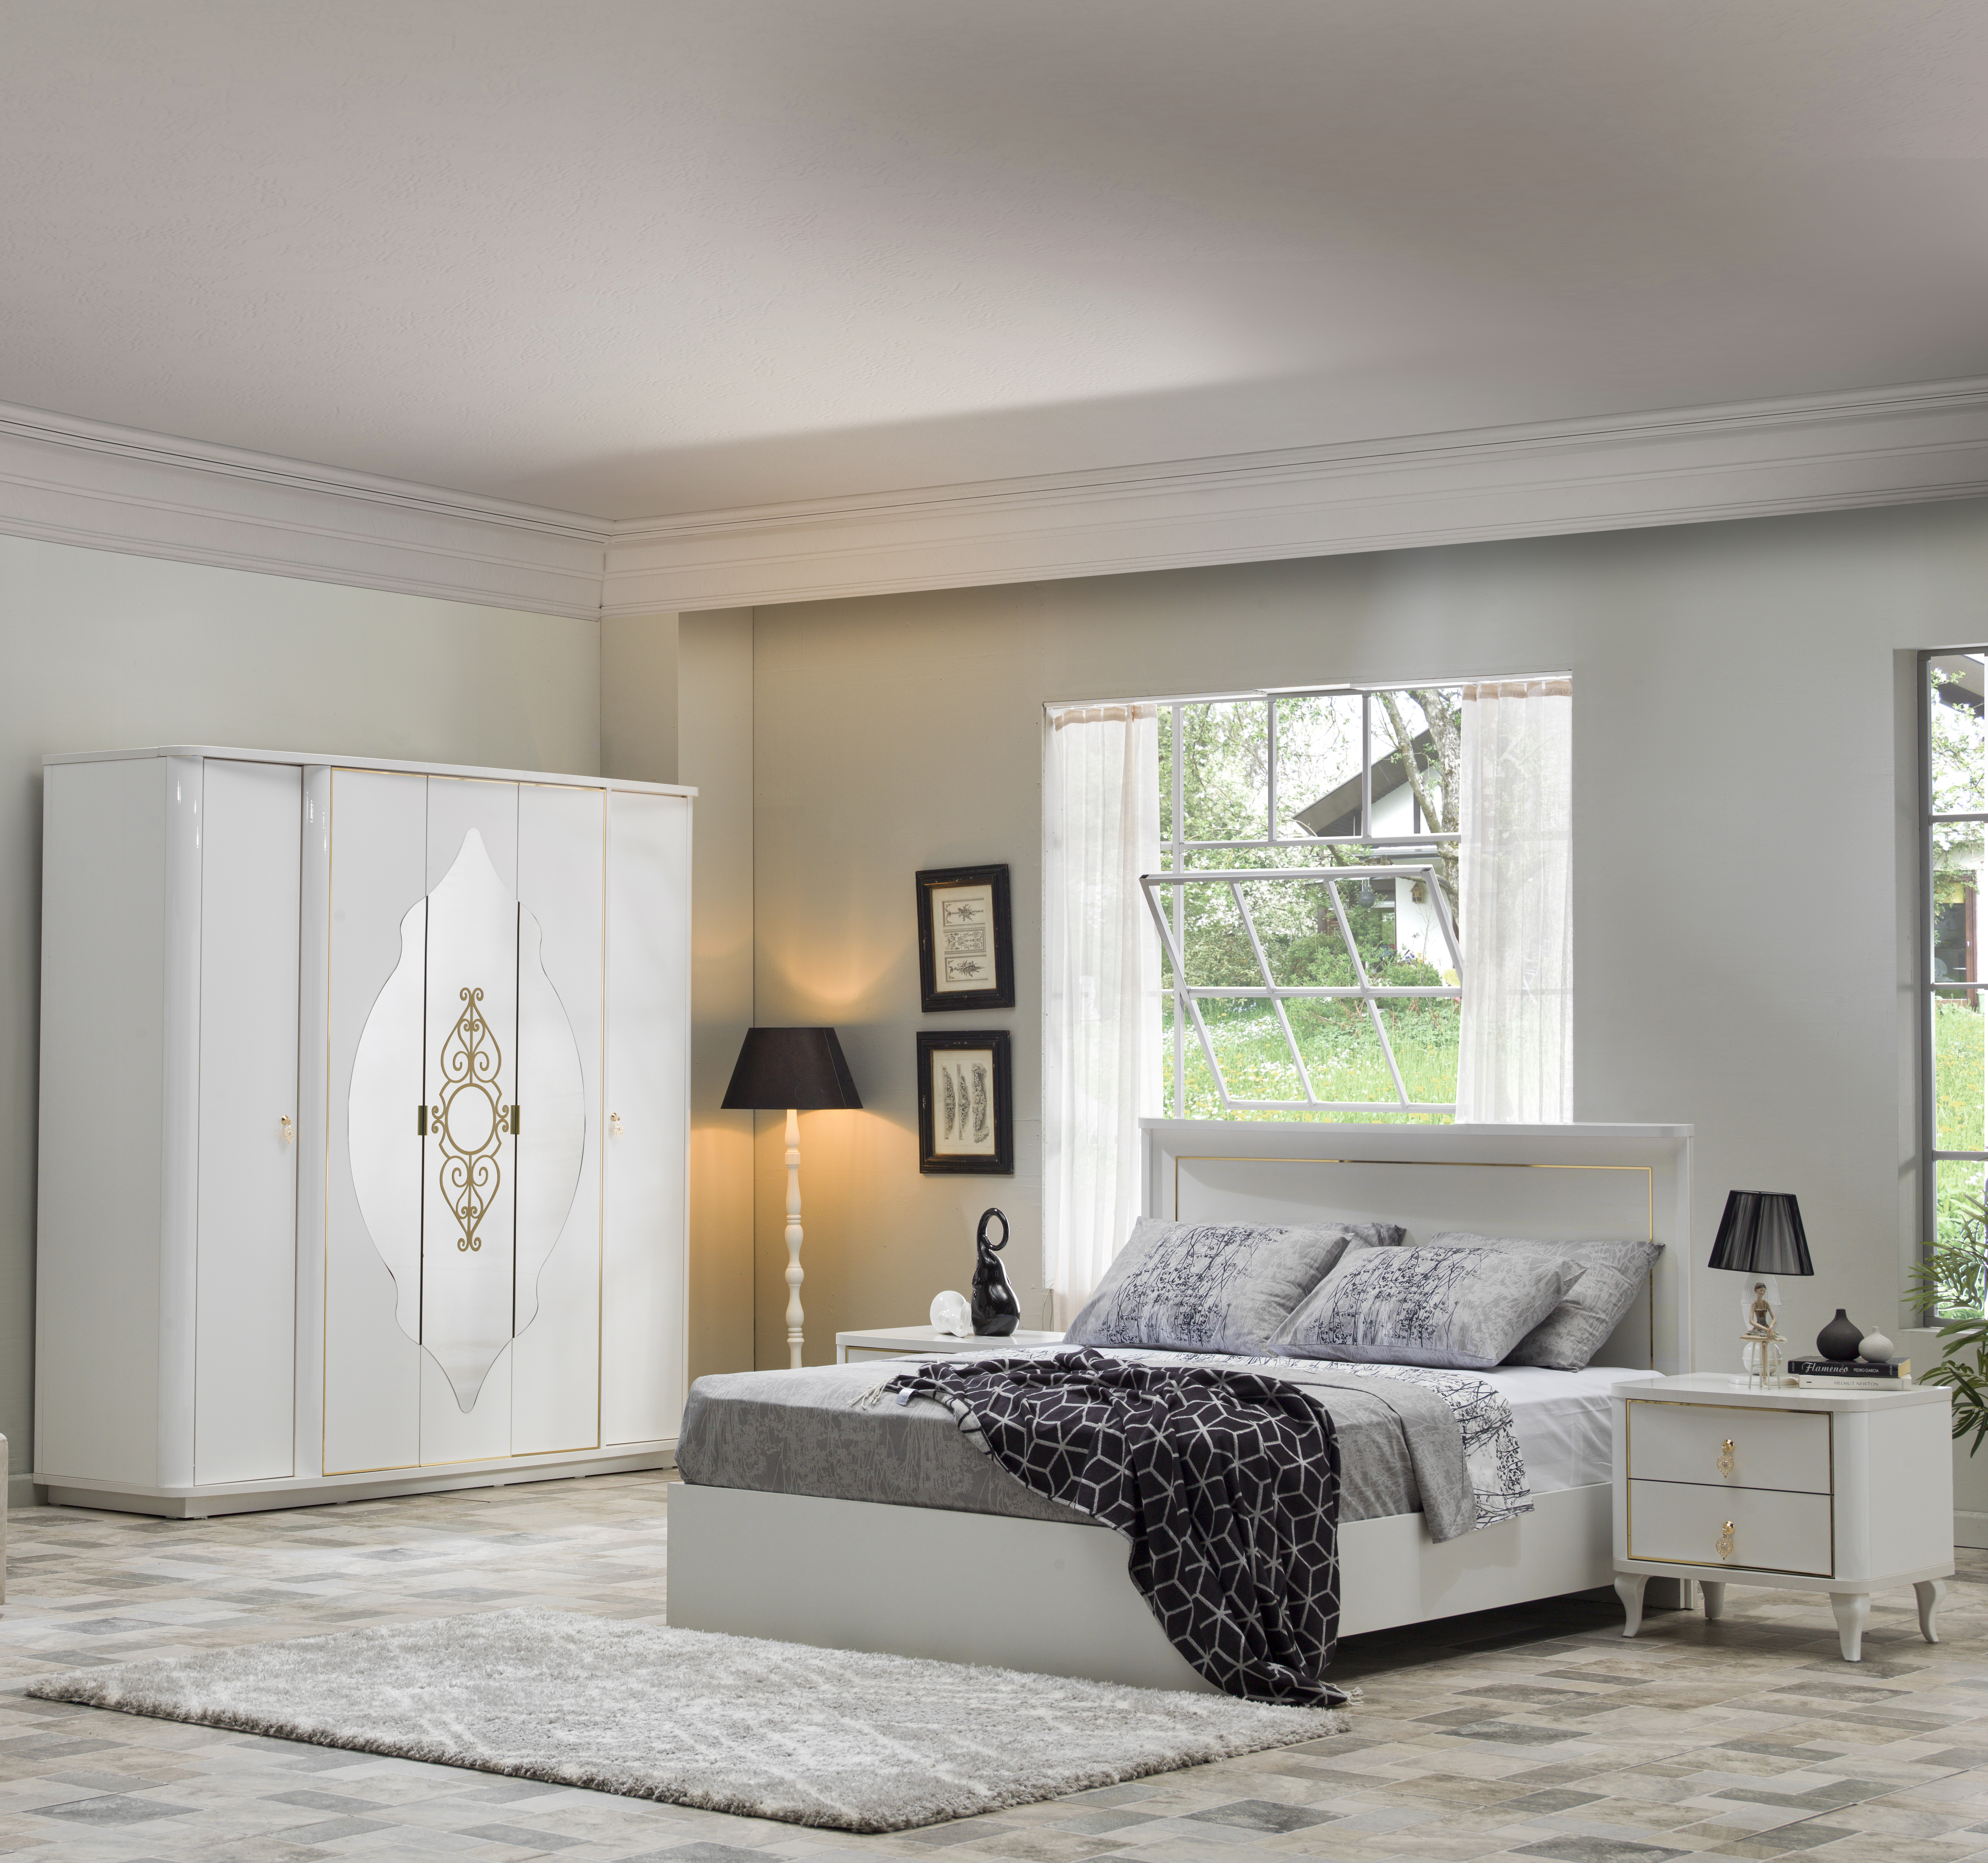 Кровать Bellona Legenda двуспальная 160x200 см, цвет: белый (LEGN-В-26-160)LEGN-В-26-160